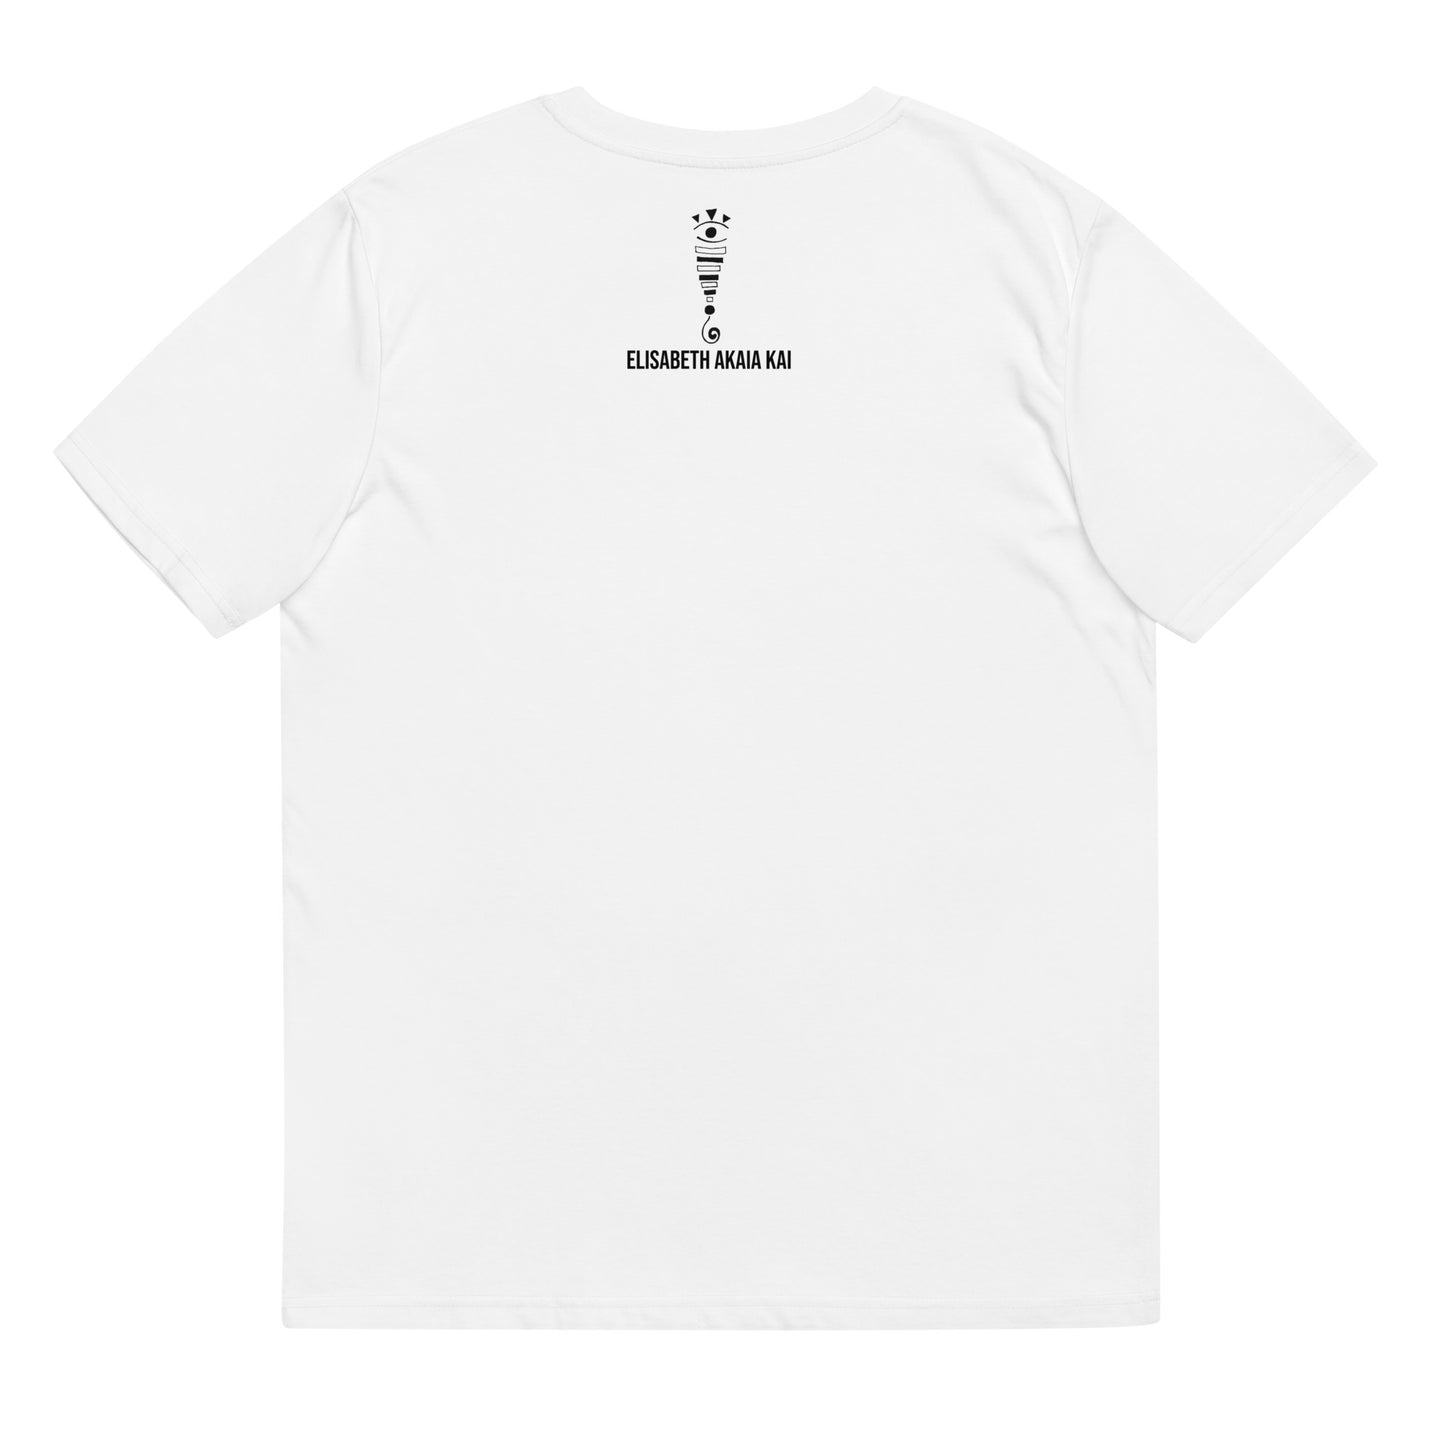 EL PODER DE LA MUJER - Camiseta unisex de algodón orgánico